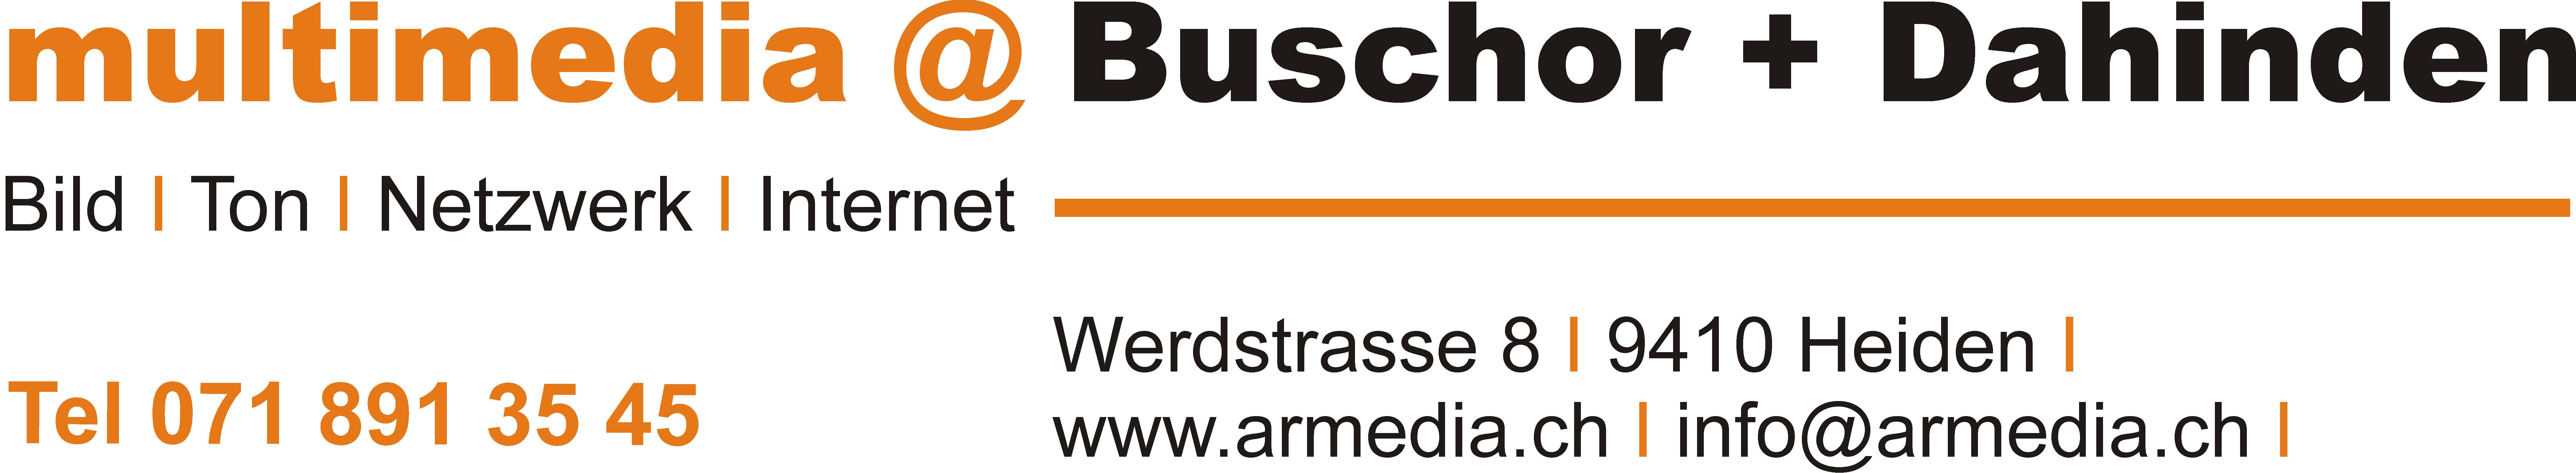 Buschor + Dahinden AG Logo